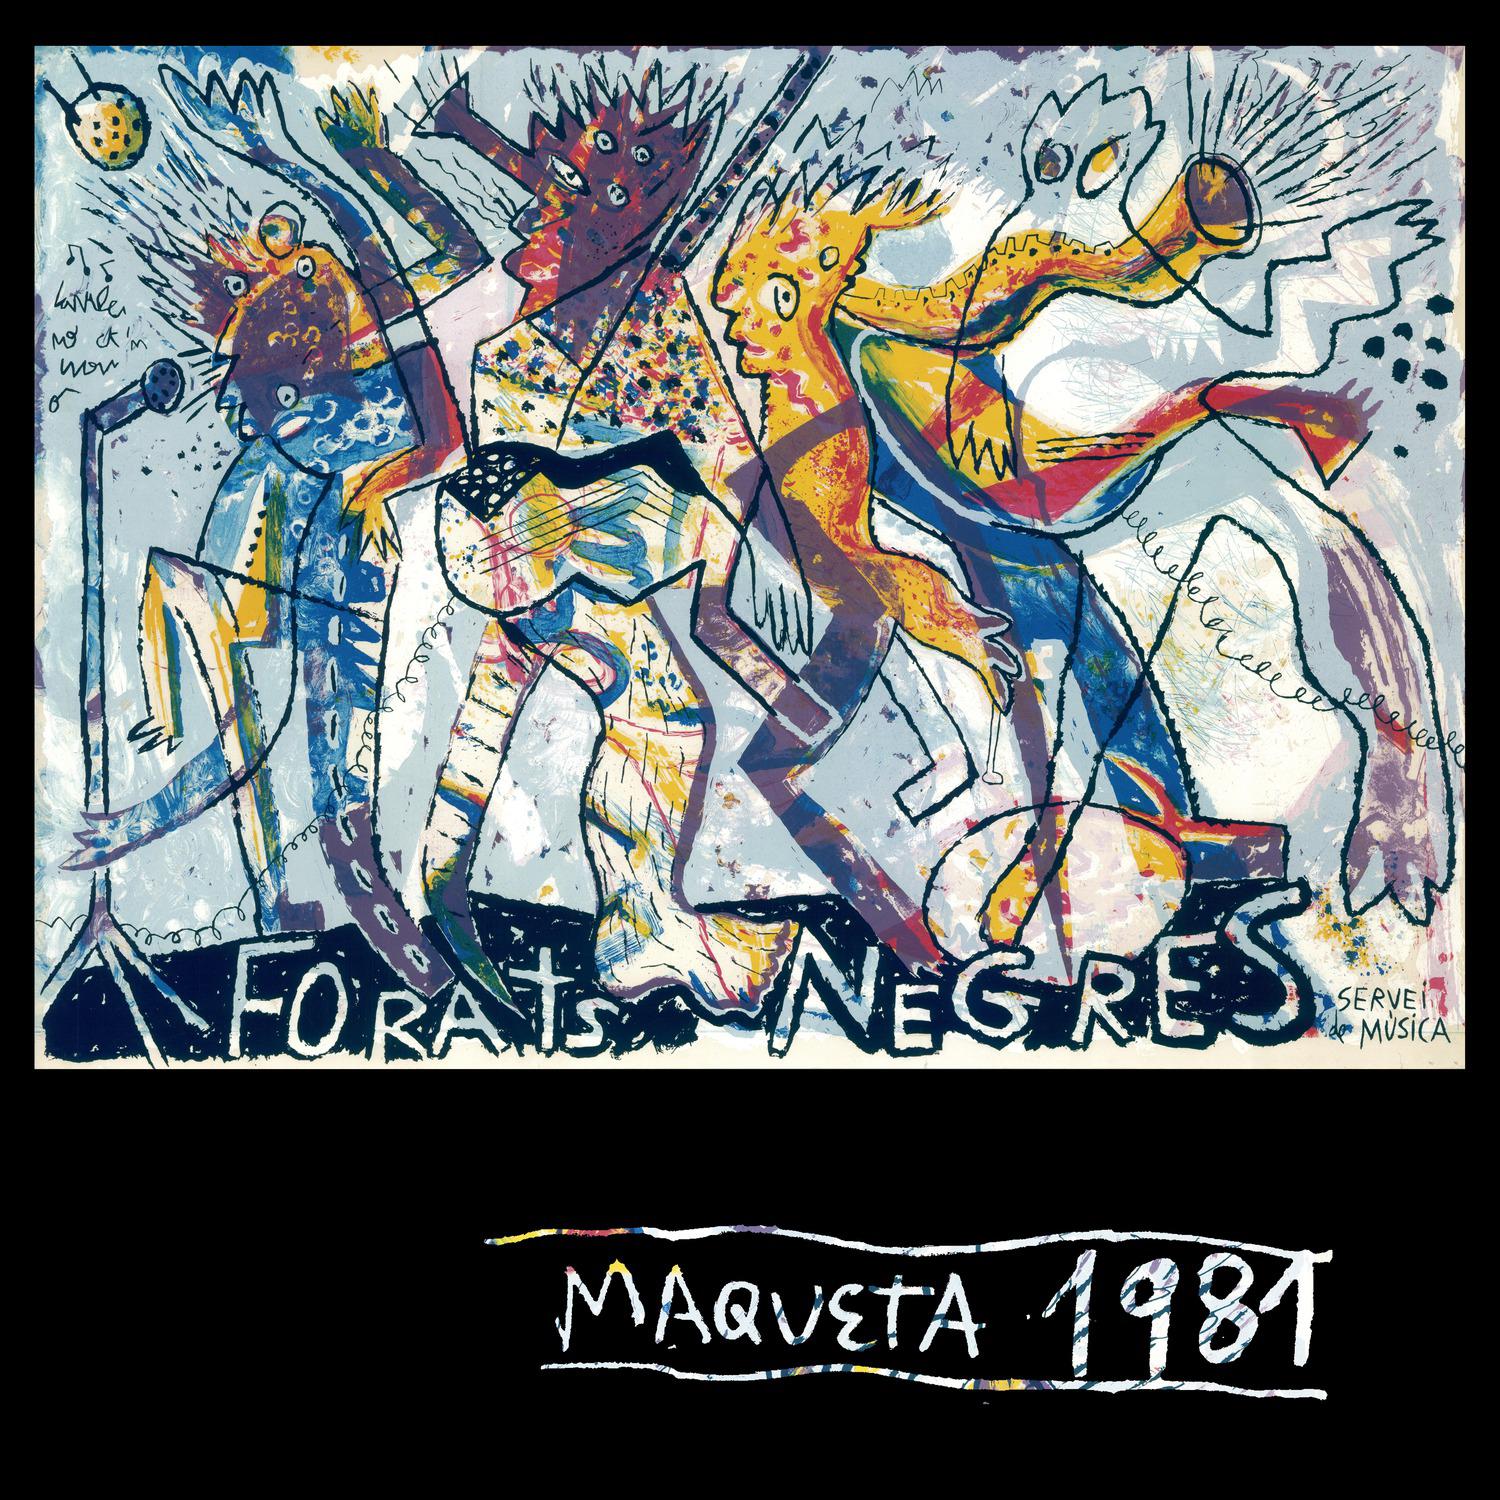 Maqueta 1981